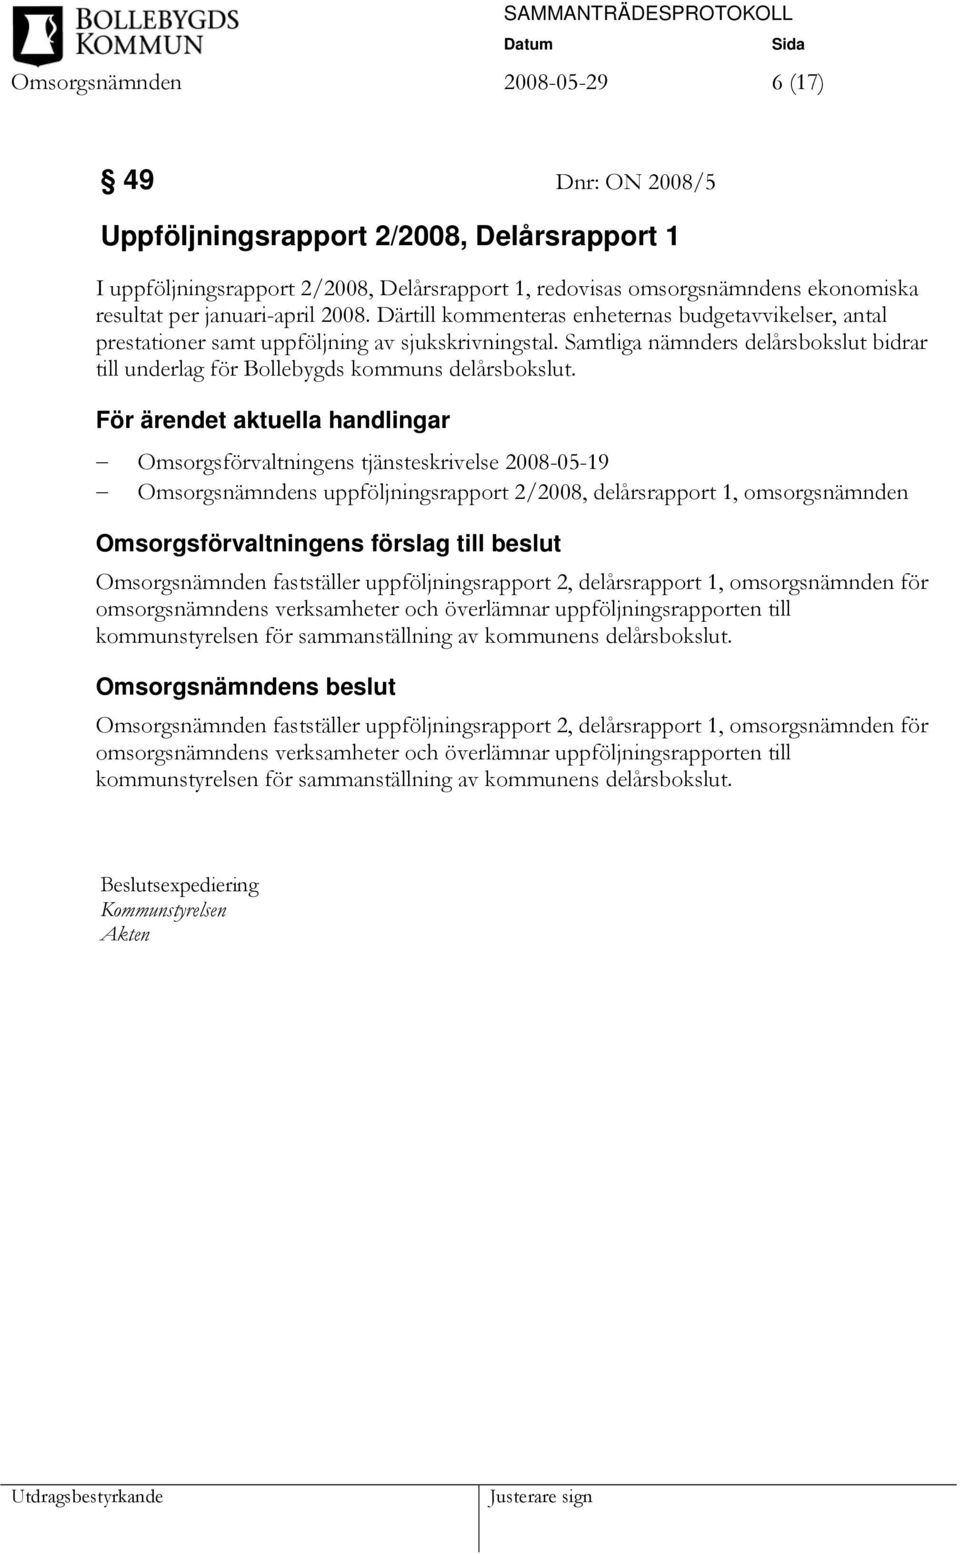 Samtliga nämnders delårsbokslut bidrar till underlag för Bollebygds kommuns delårsbokslut.